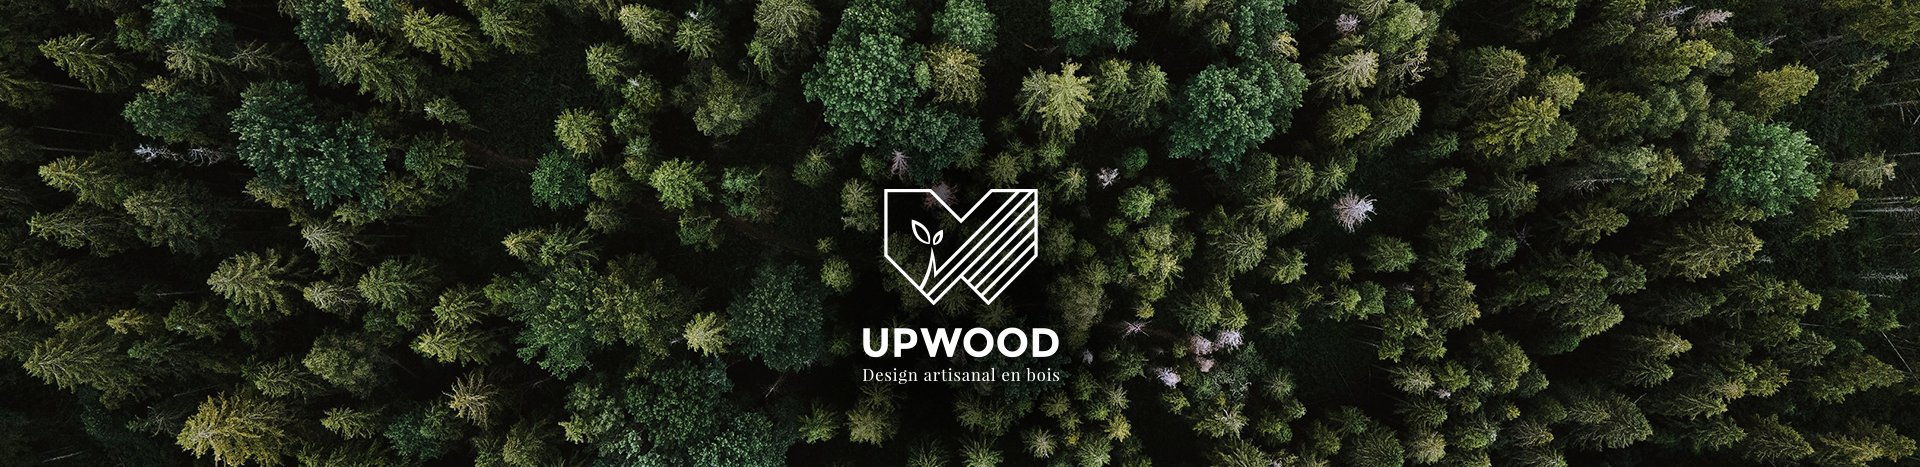 Upwood